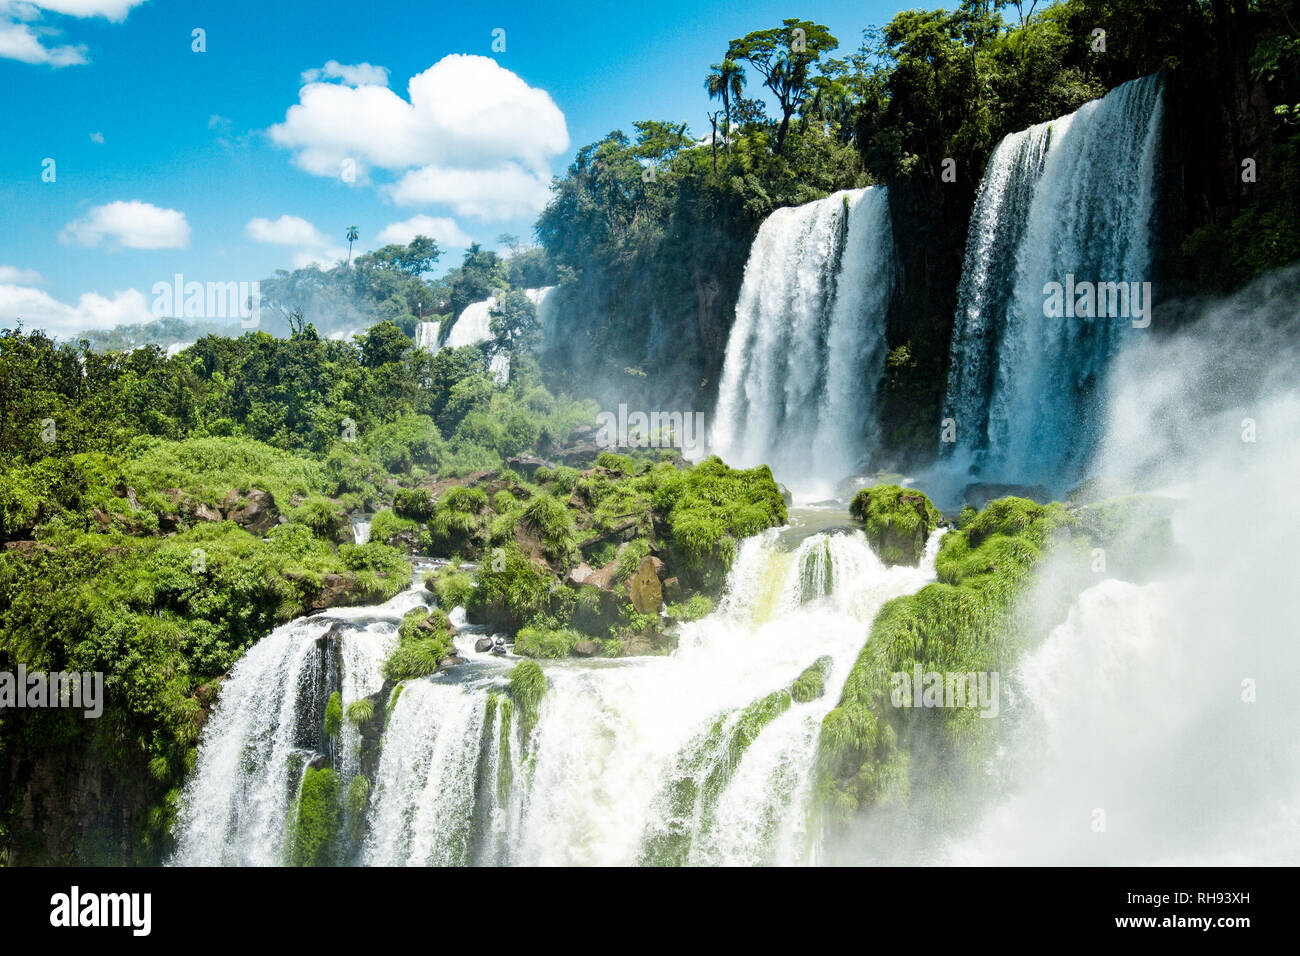 Las increíbles cataratas de Iguazú en Brasil Foto de stock